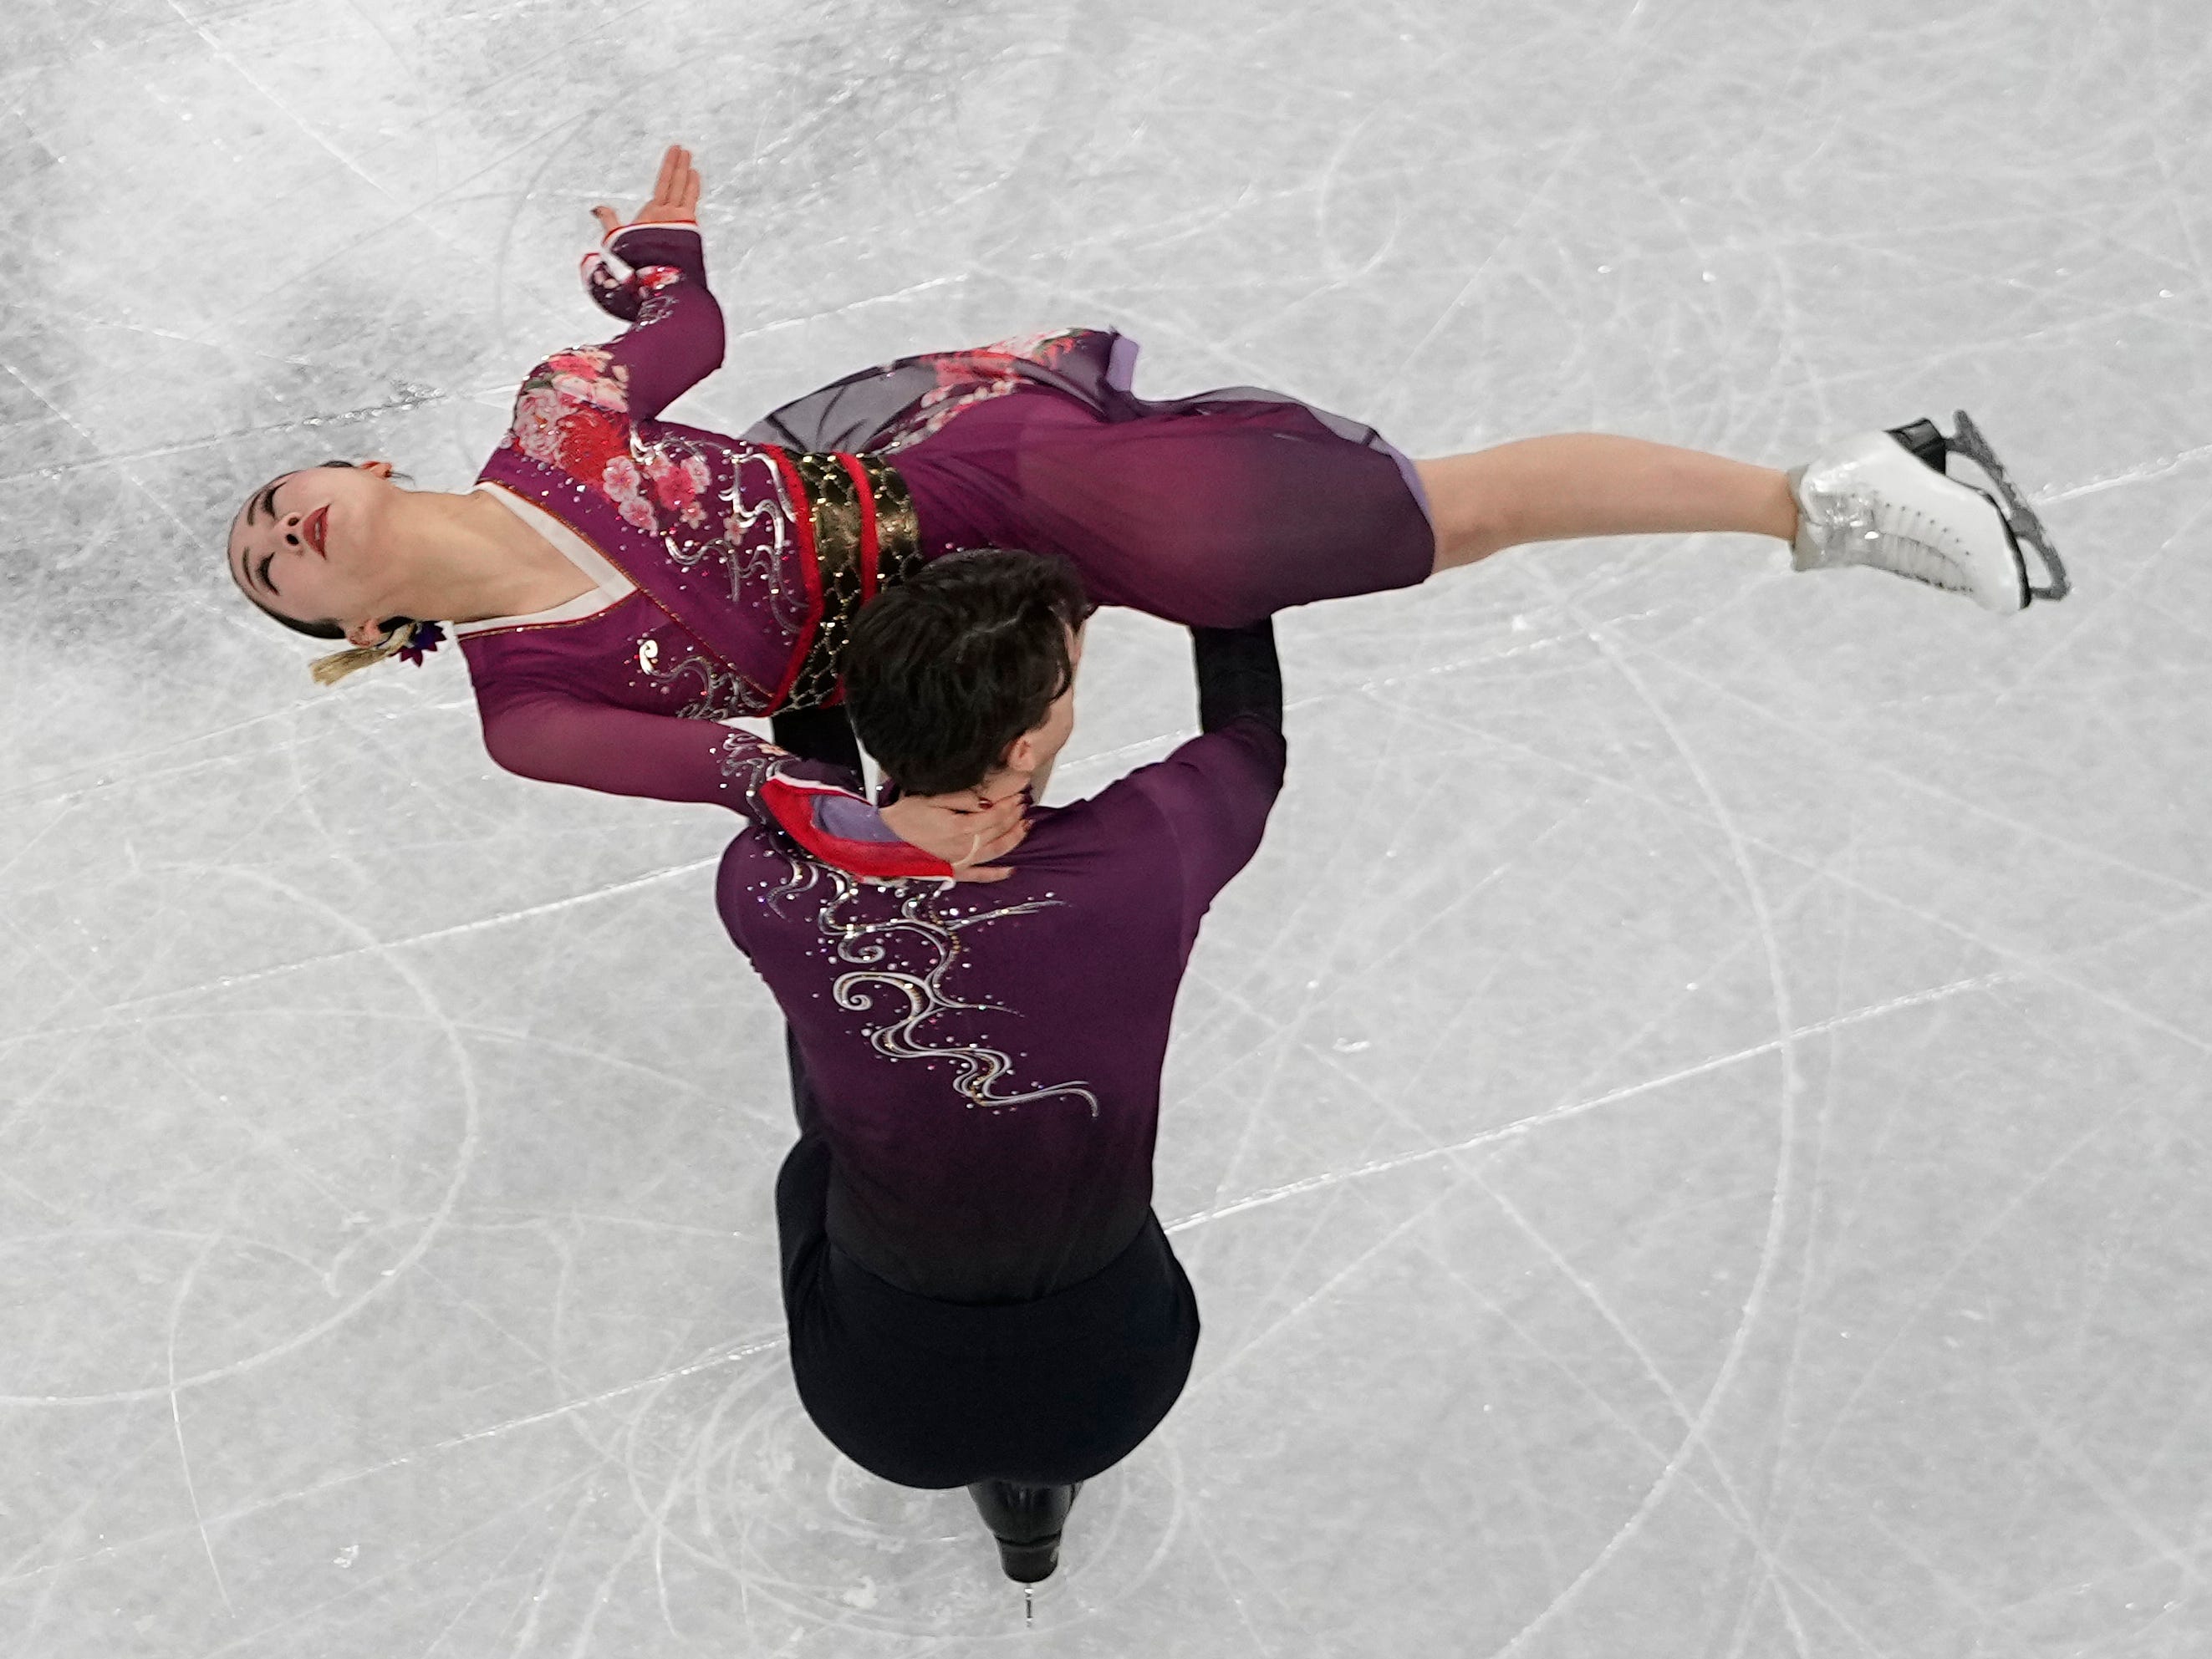 Misato Komatsubara und Tim Koleto aus Japan treten beim Eiskunstlaufwettbewerb bei den Olympischen Winterspielen 2022 am Montag, den 7. Februar 2022 in Peking im Team-Eistanzprogramm an.